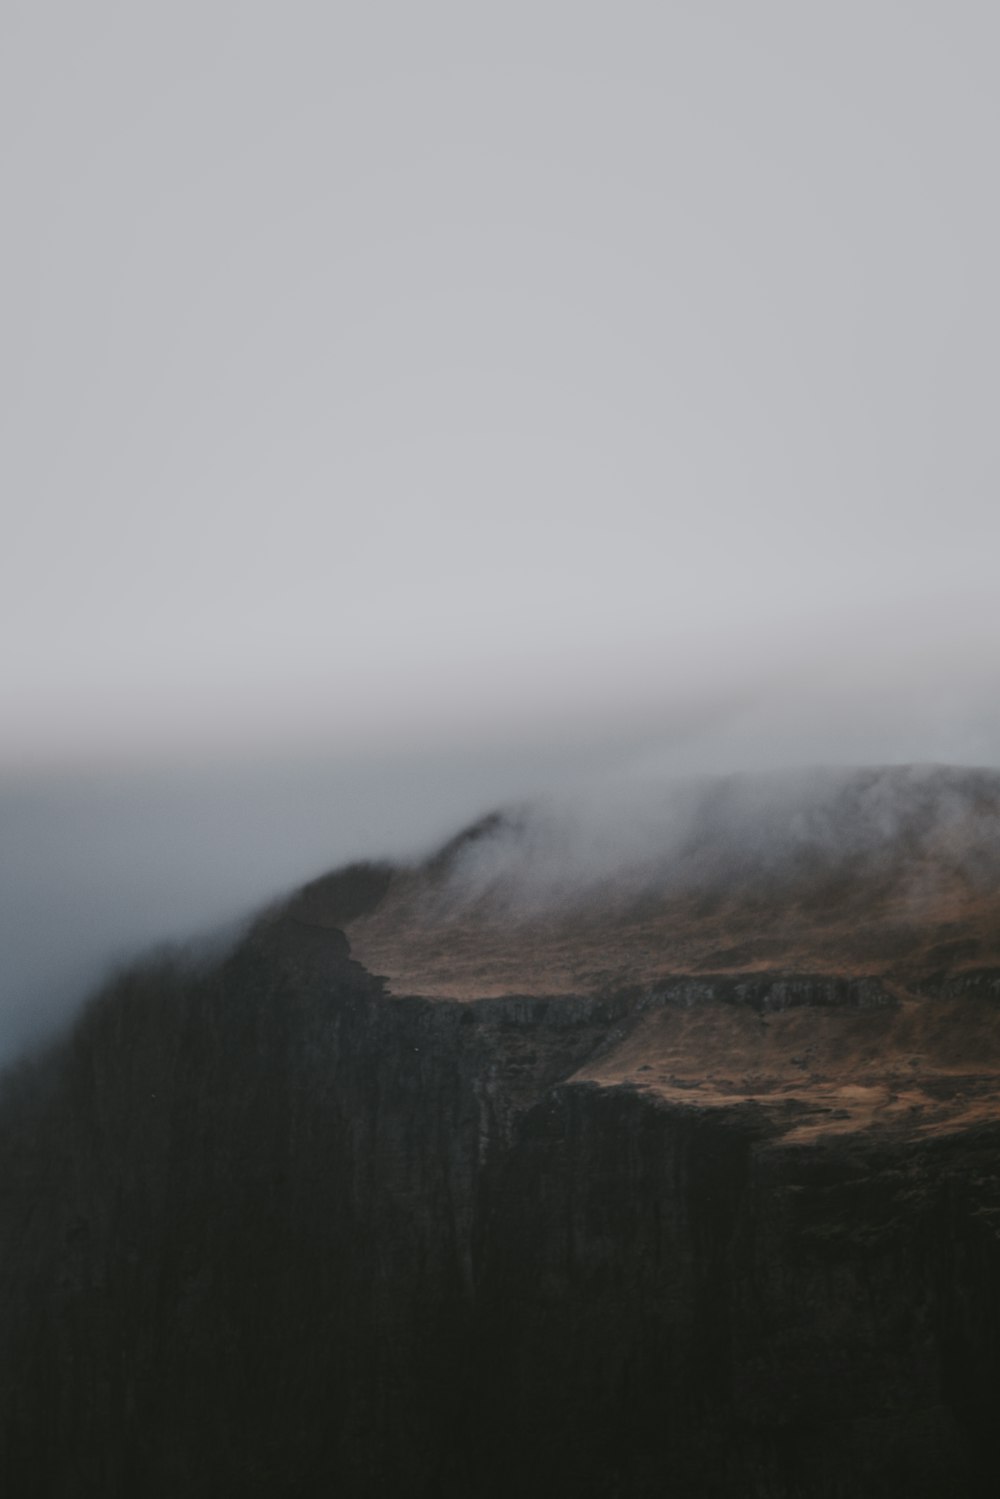 Ein Berg, der an einem bewölkten Tag in Nebel und Wolken gehüllt ist